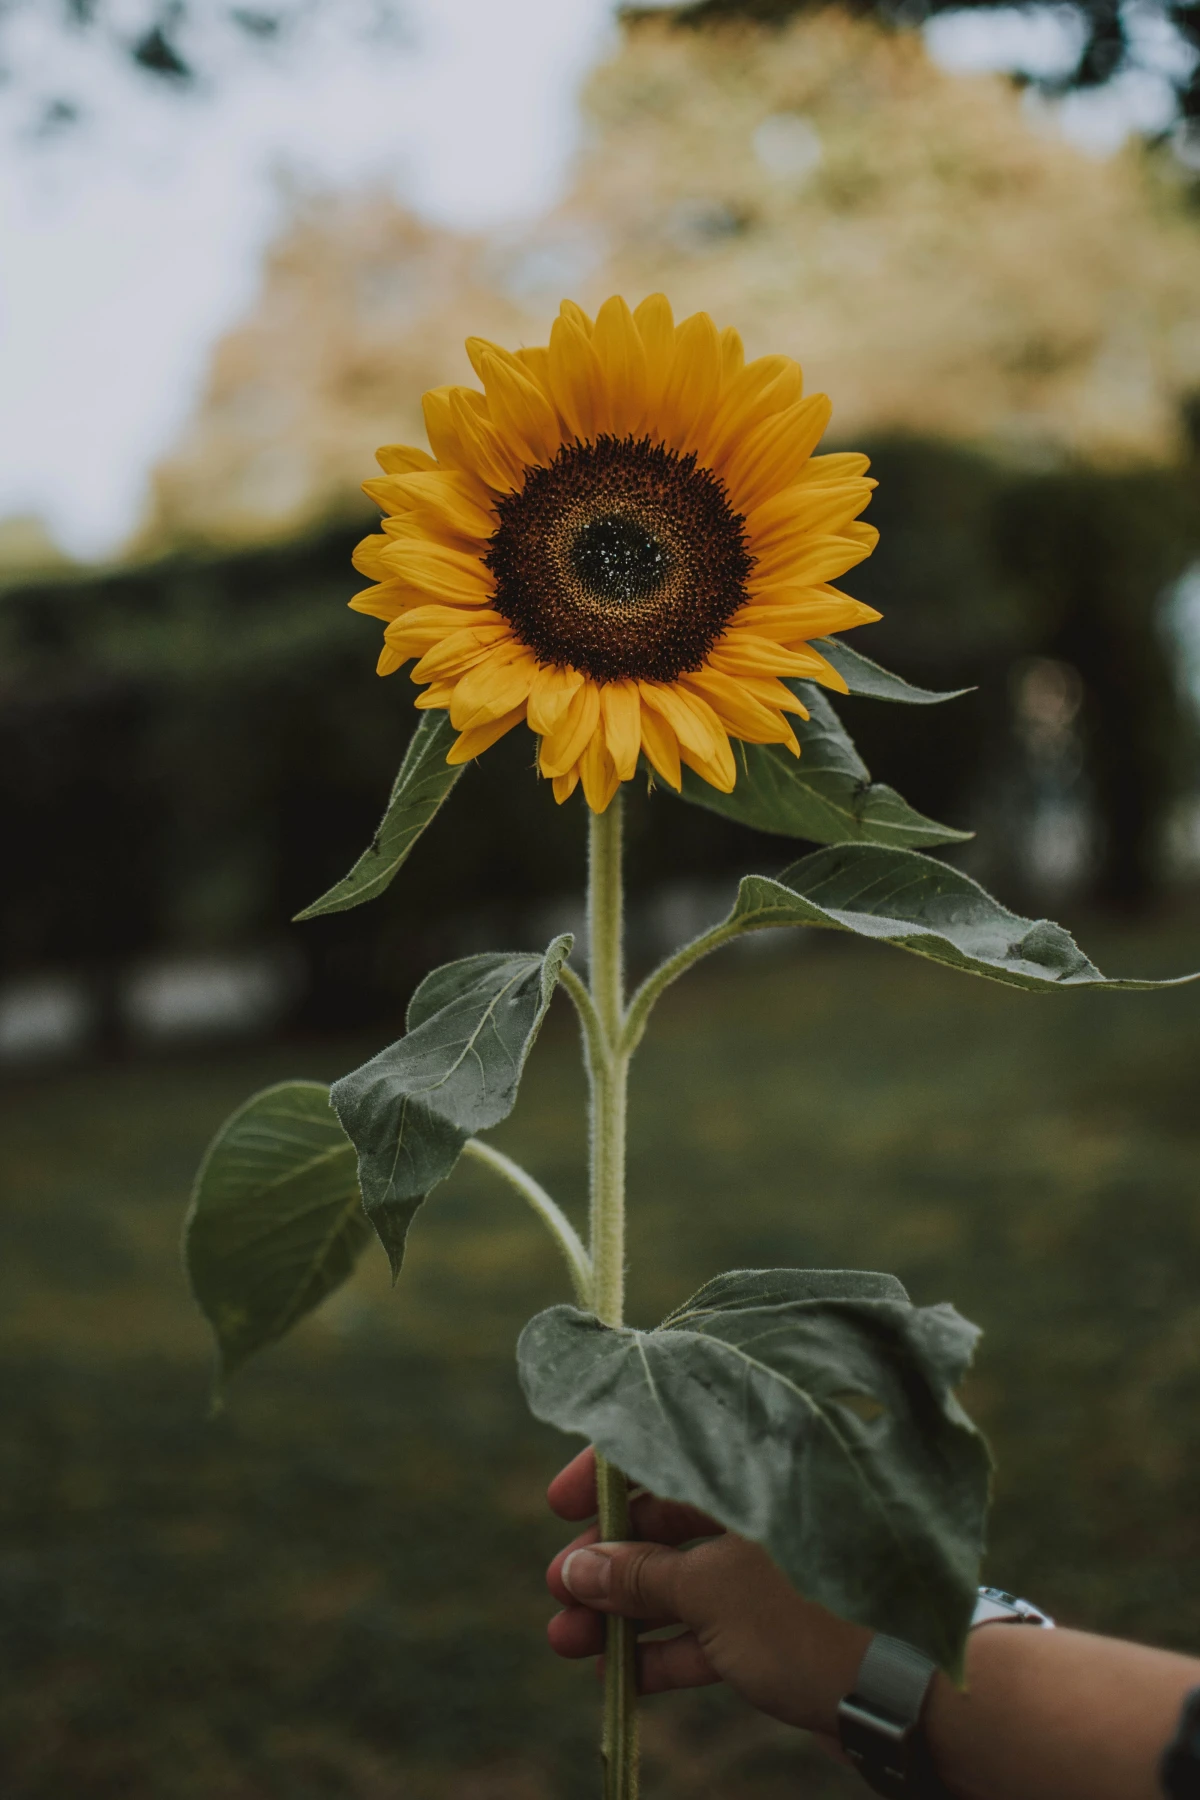 hand holding sunflower flower